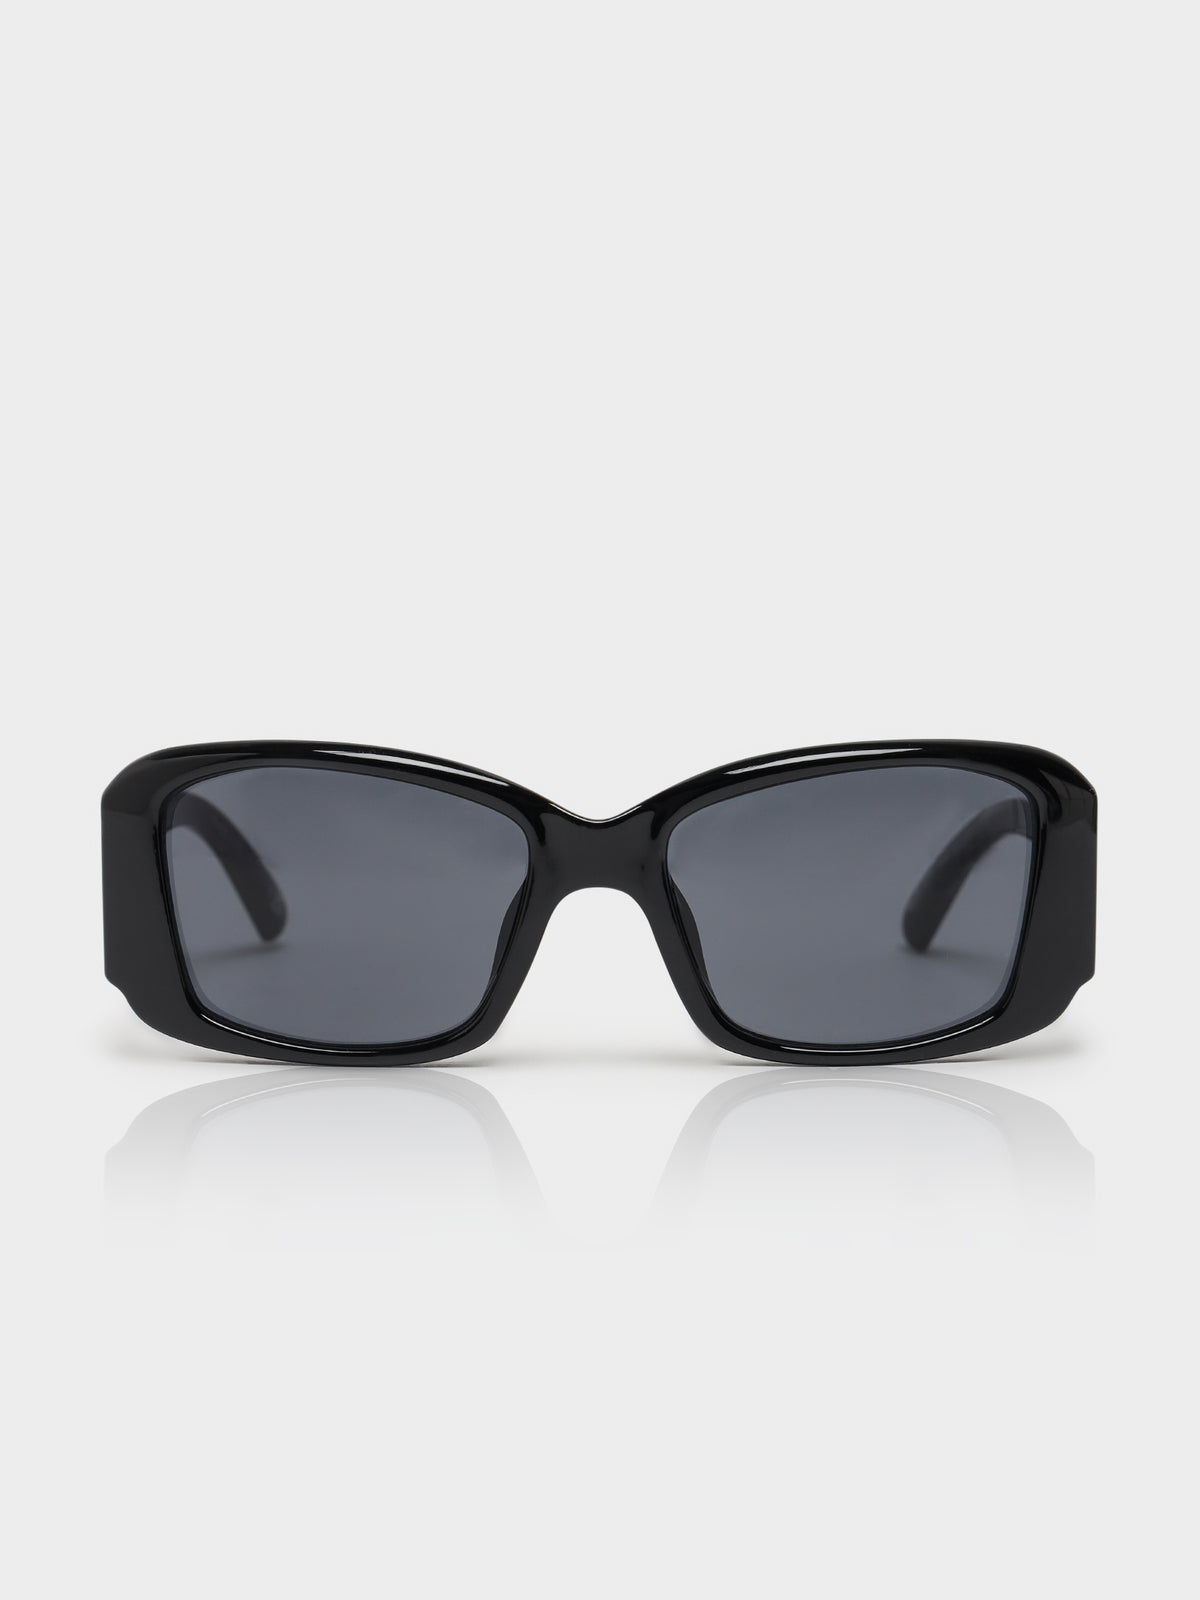 Noveau Riche Sunglasses in Black